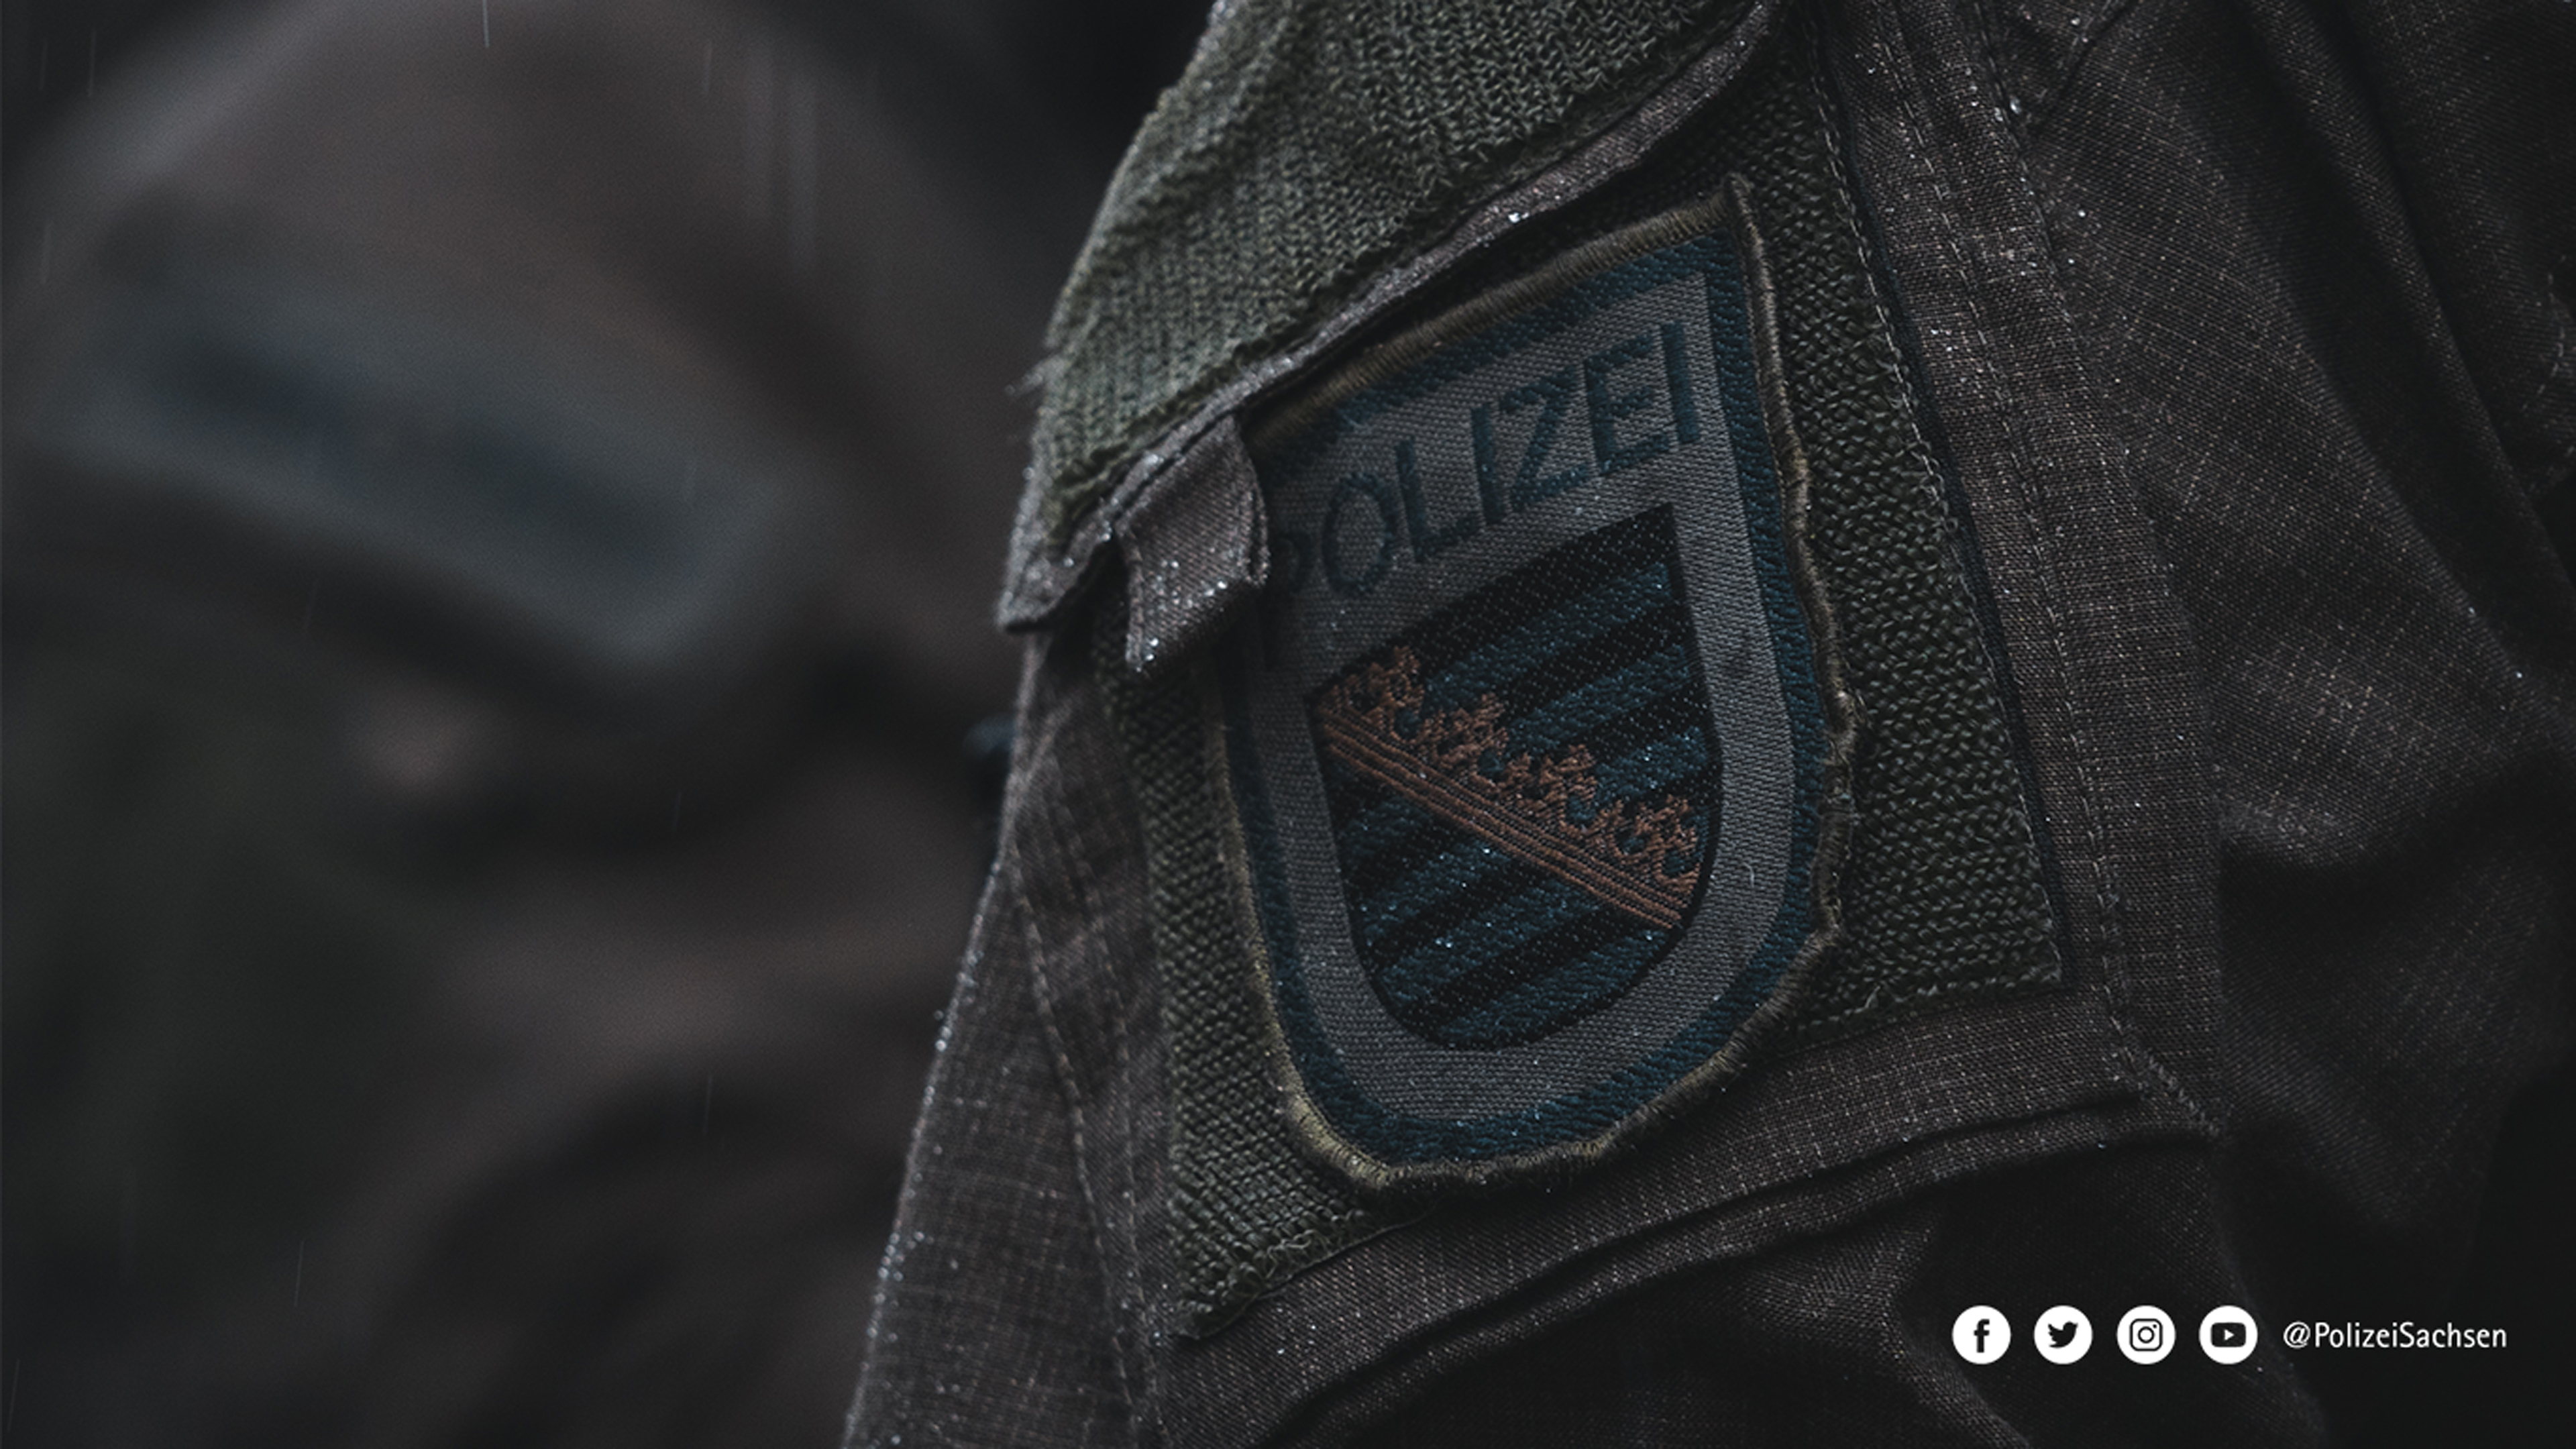 Nahaufnahme des Wappens der Polizei Sachsen auf einer dunklen Uniform.